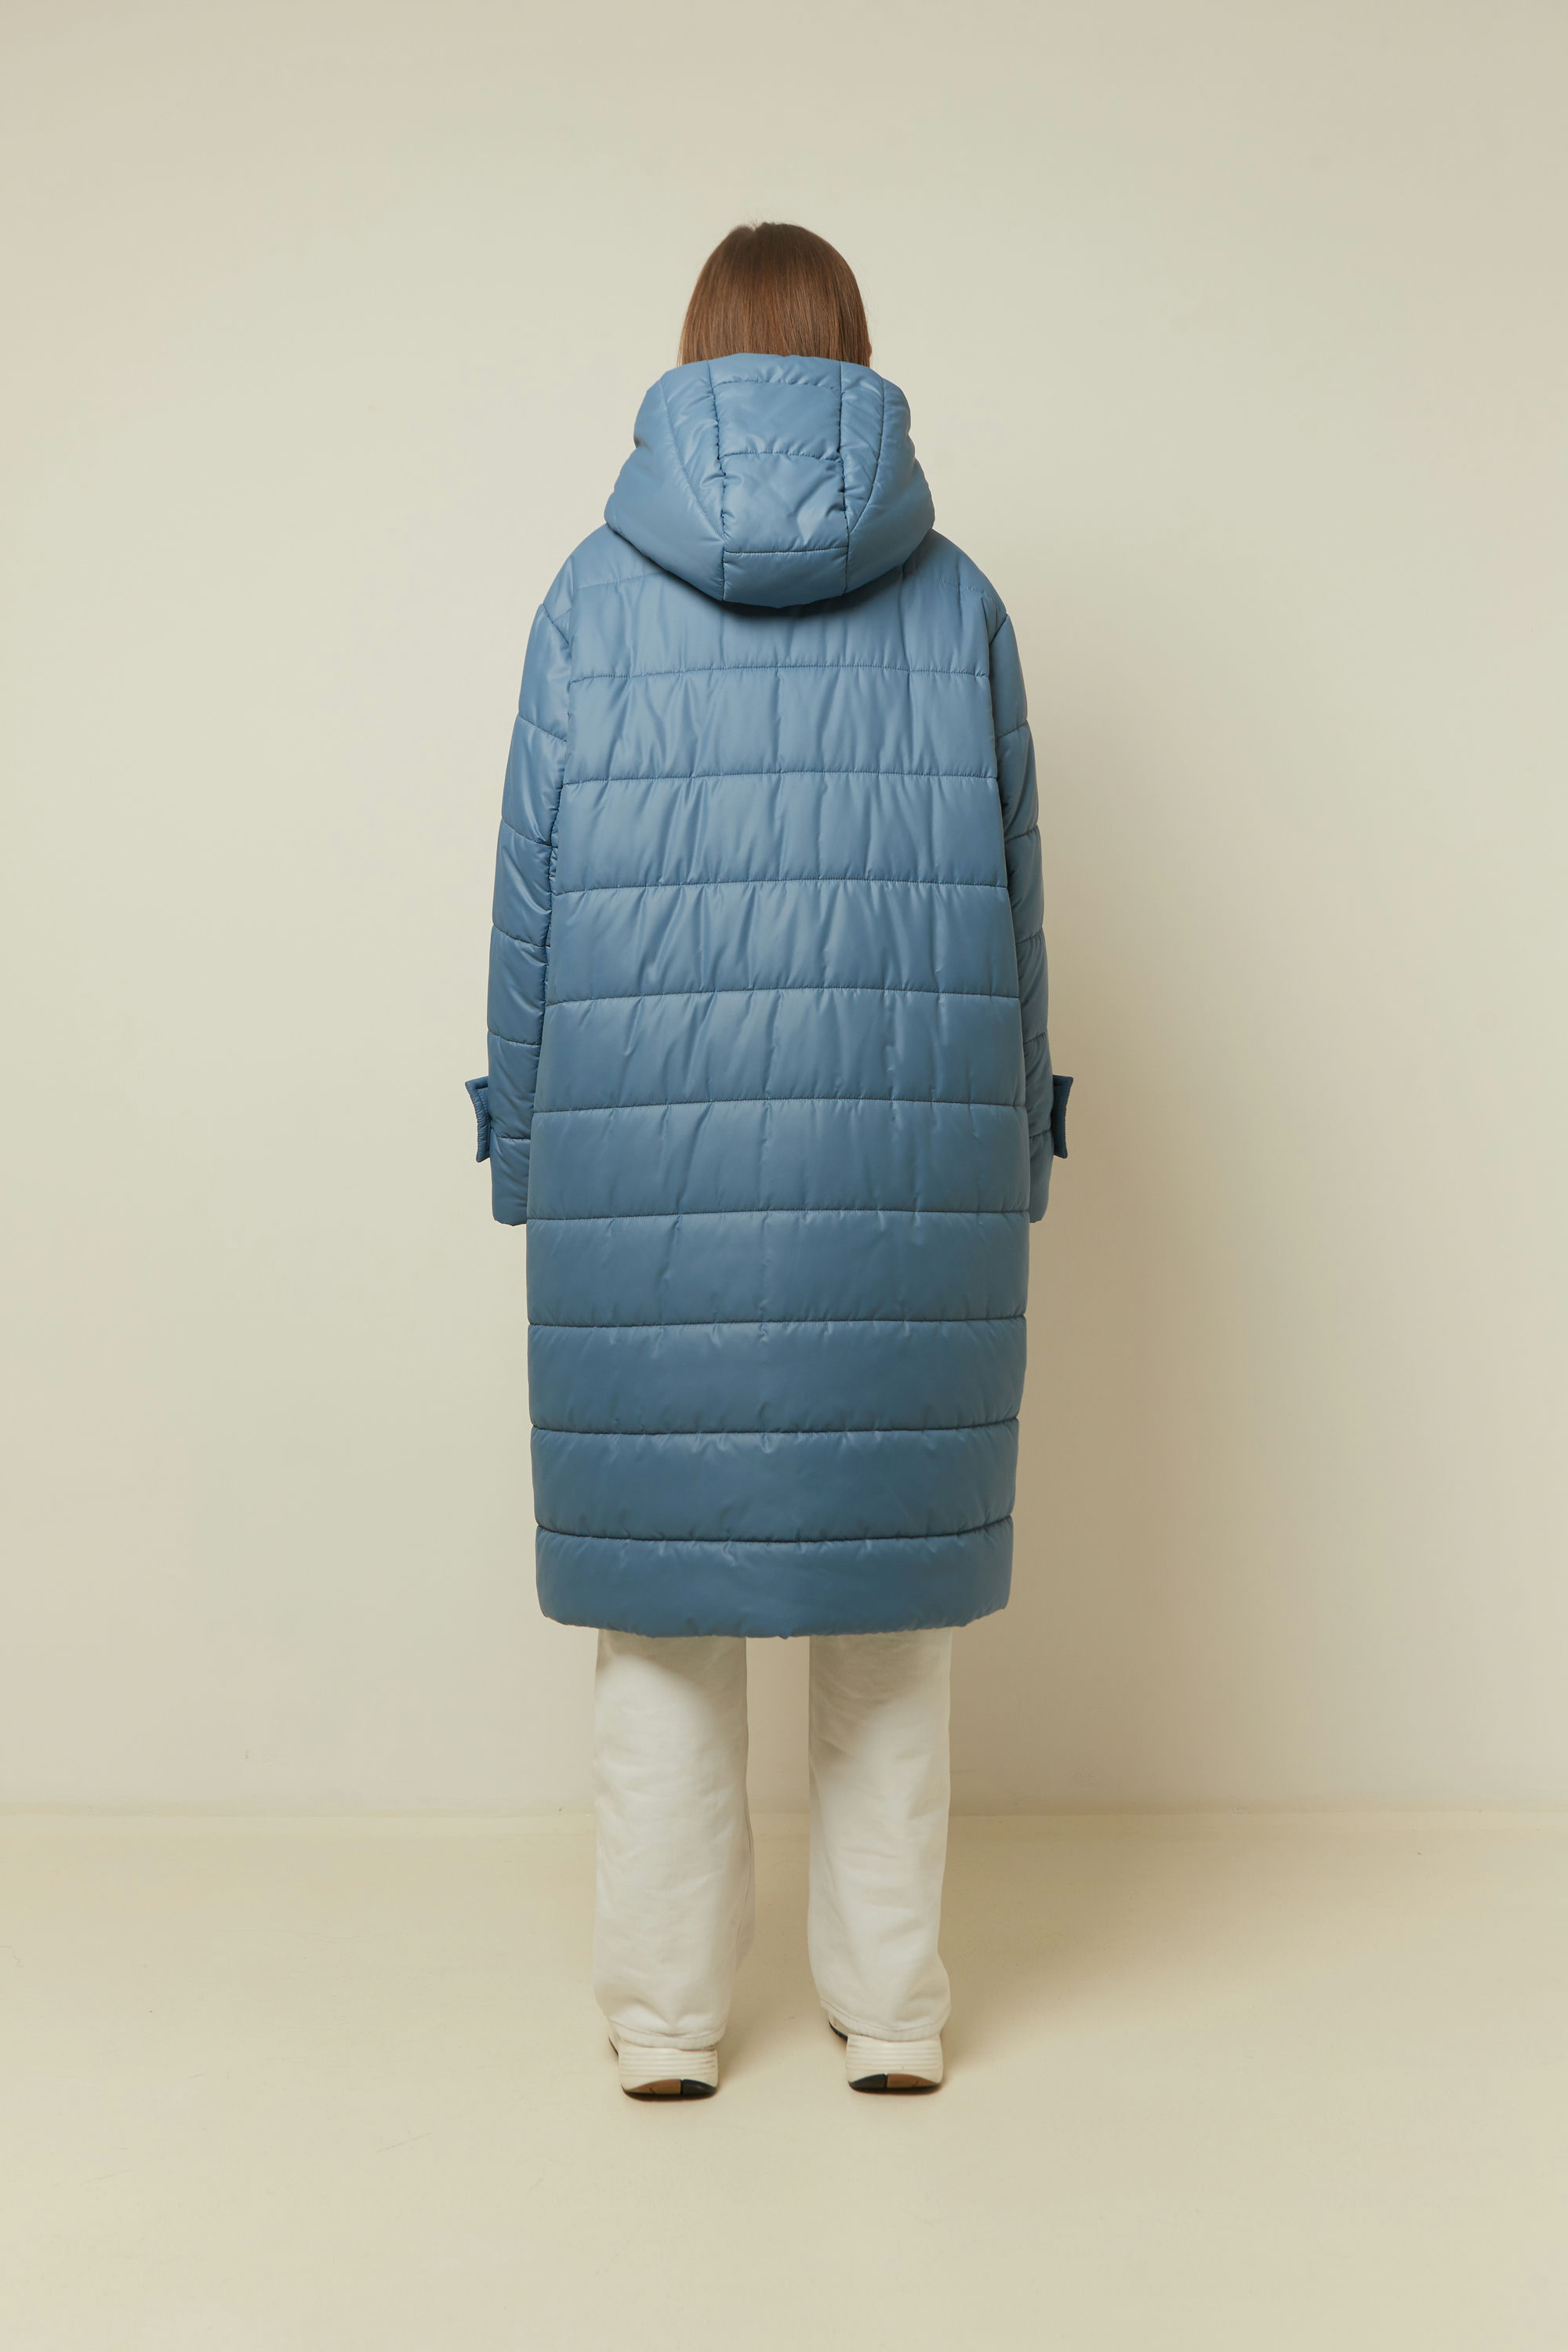 Пальто женское плащевое утепленное 5-13059-1. Фото 3.